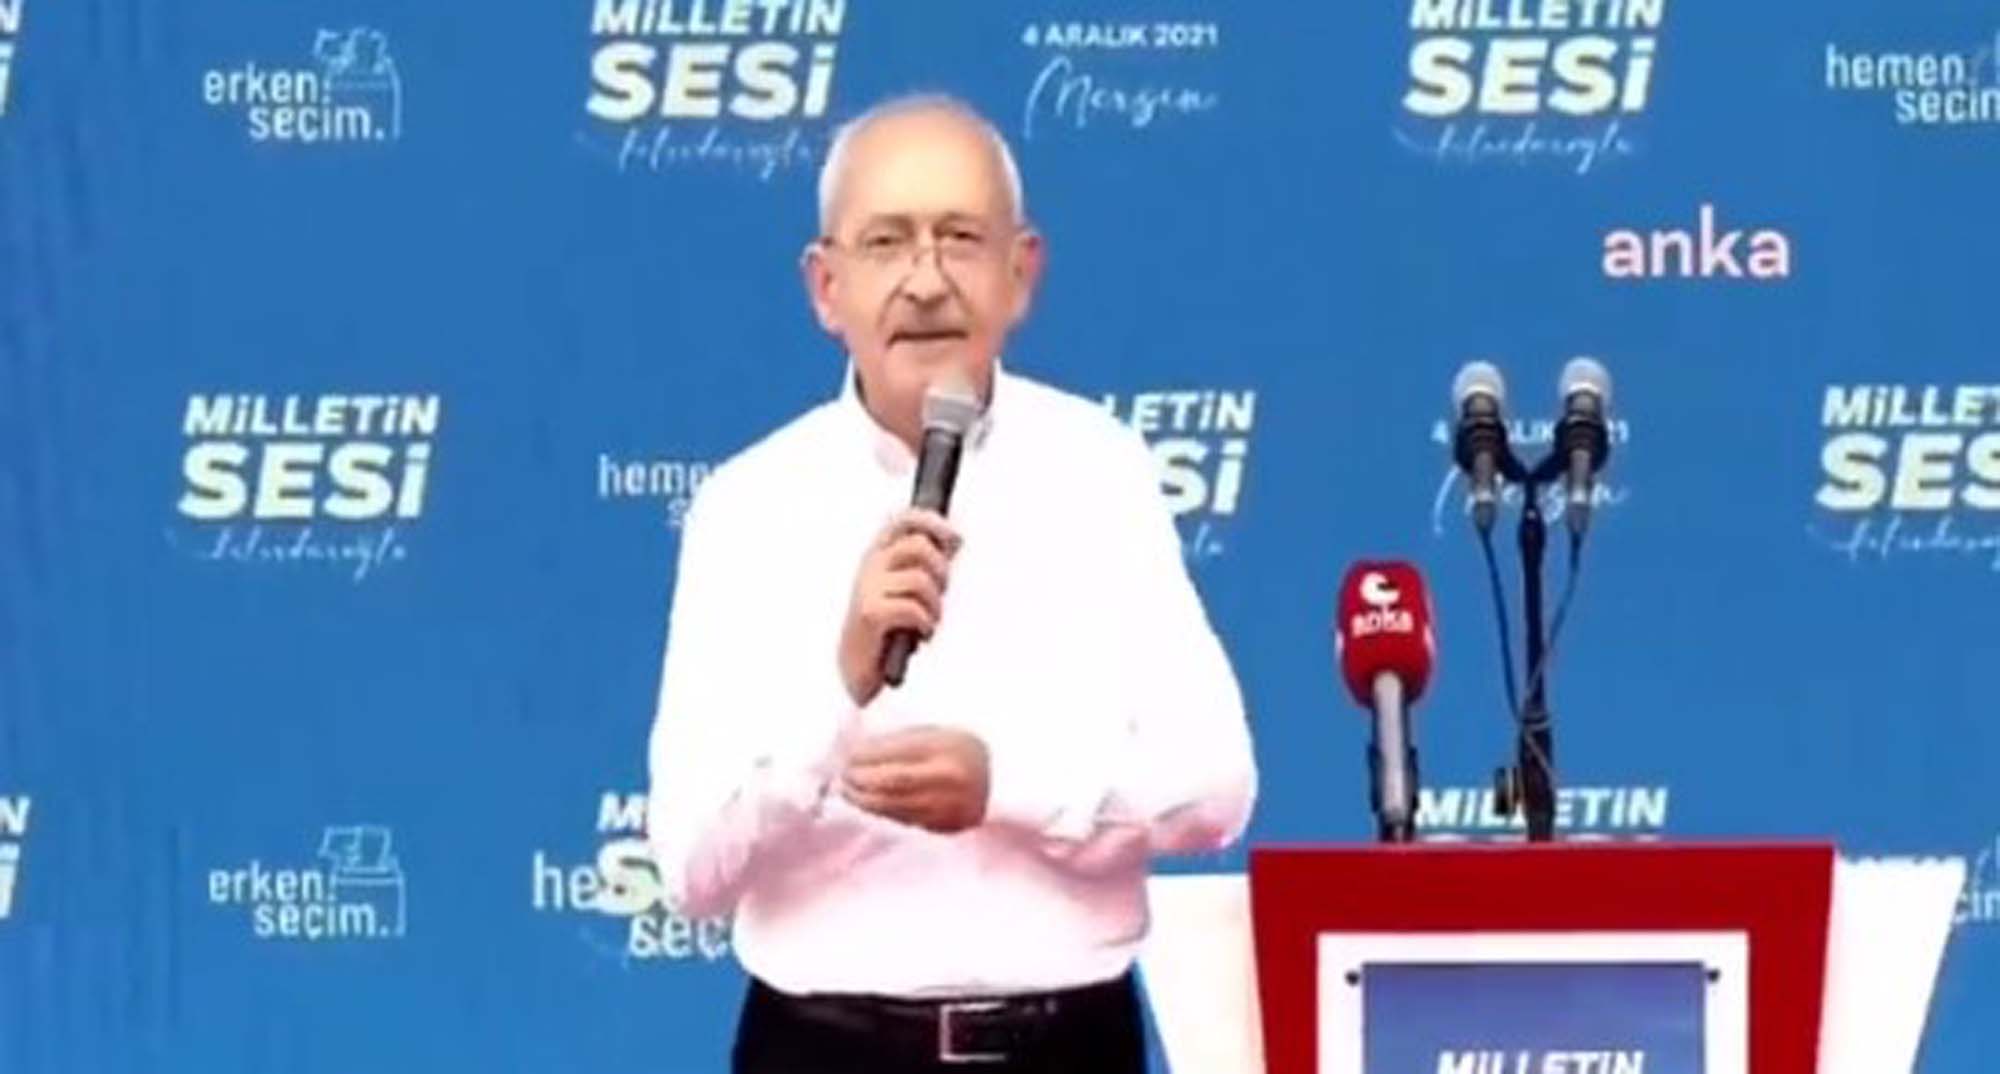 Kemal Kılıçdaroğlu adaylığının mesajını mı verdi? İmamoğlu'nu taklit ederek gömlek çıkarıp kol sıvadı!